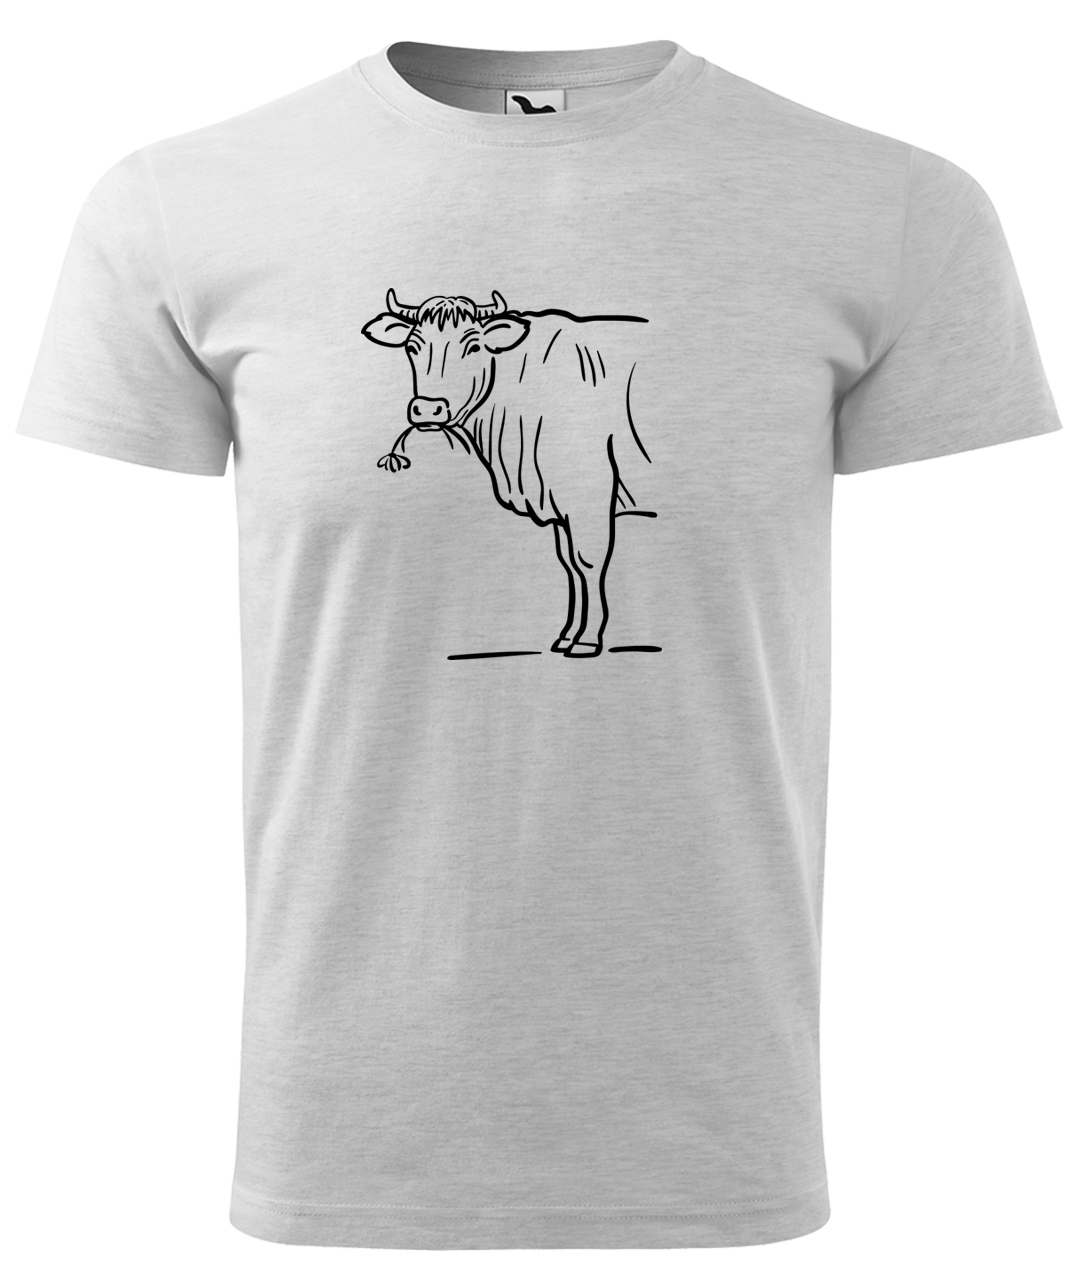 Dětské tričko s krávou - Býk Velikost: 10 let / 146 cm, Barva: Světle šedý melír (03), Délka rukávu: Krátký rukáv